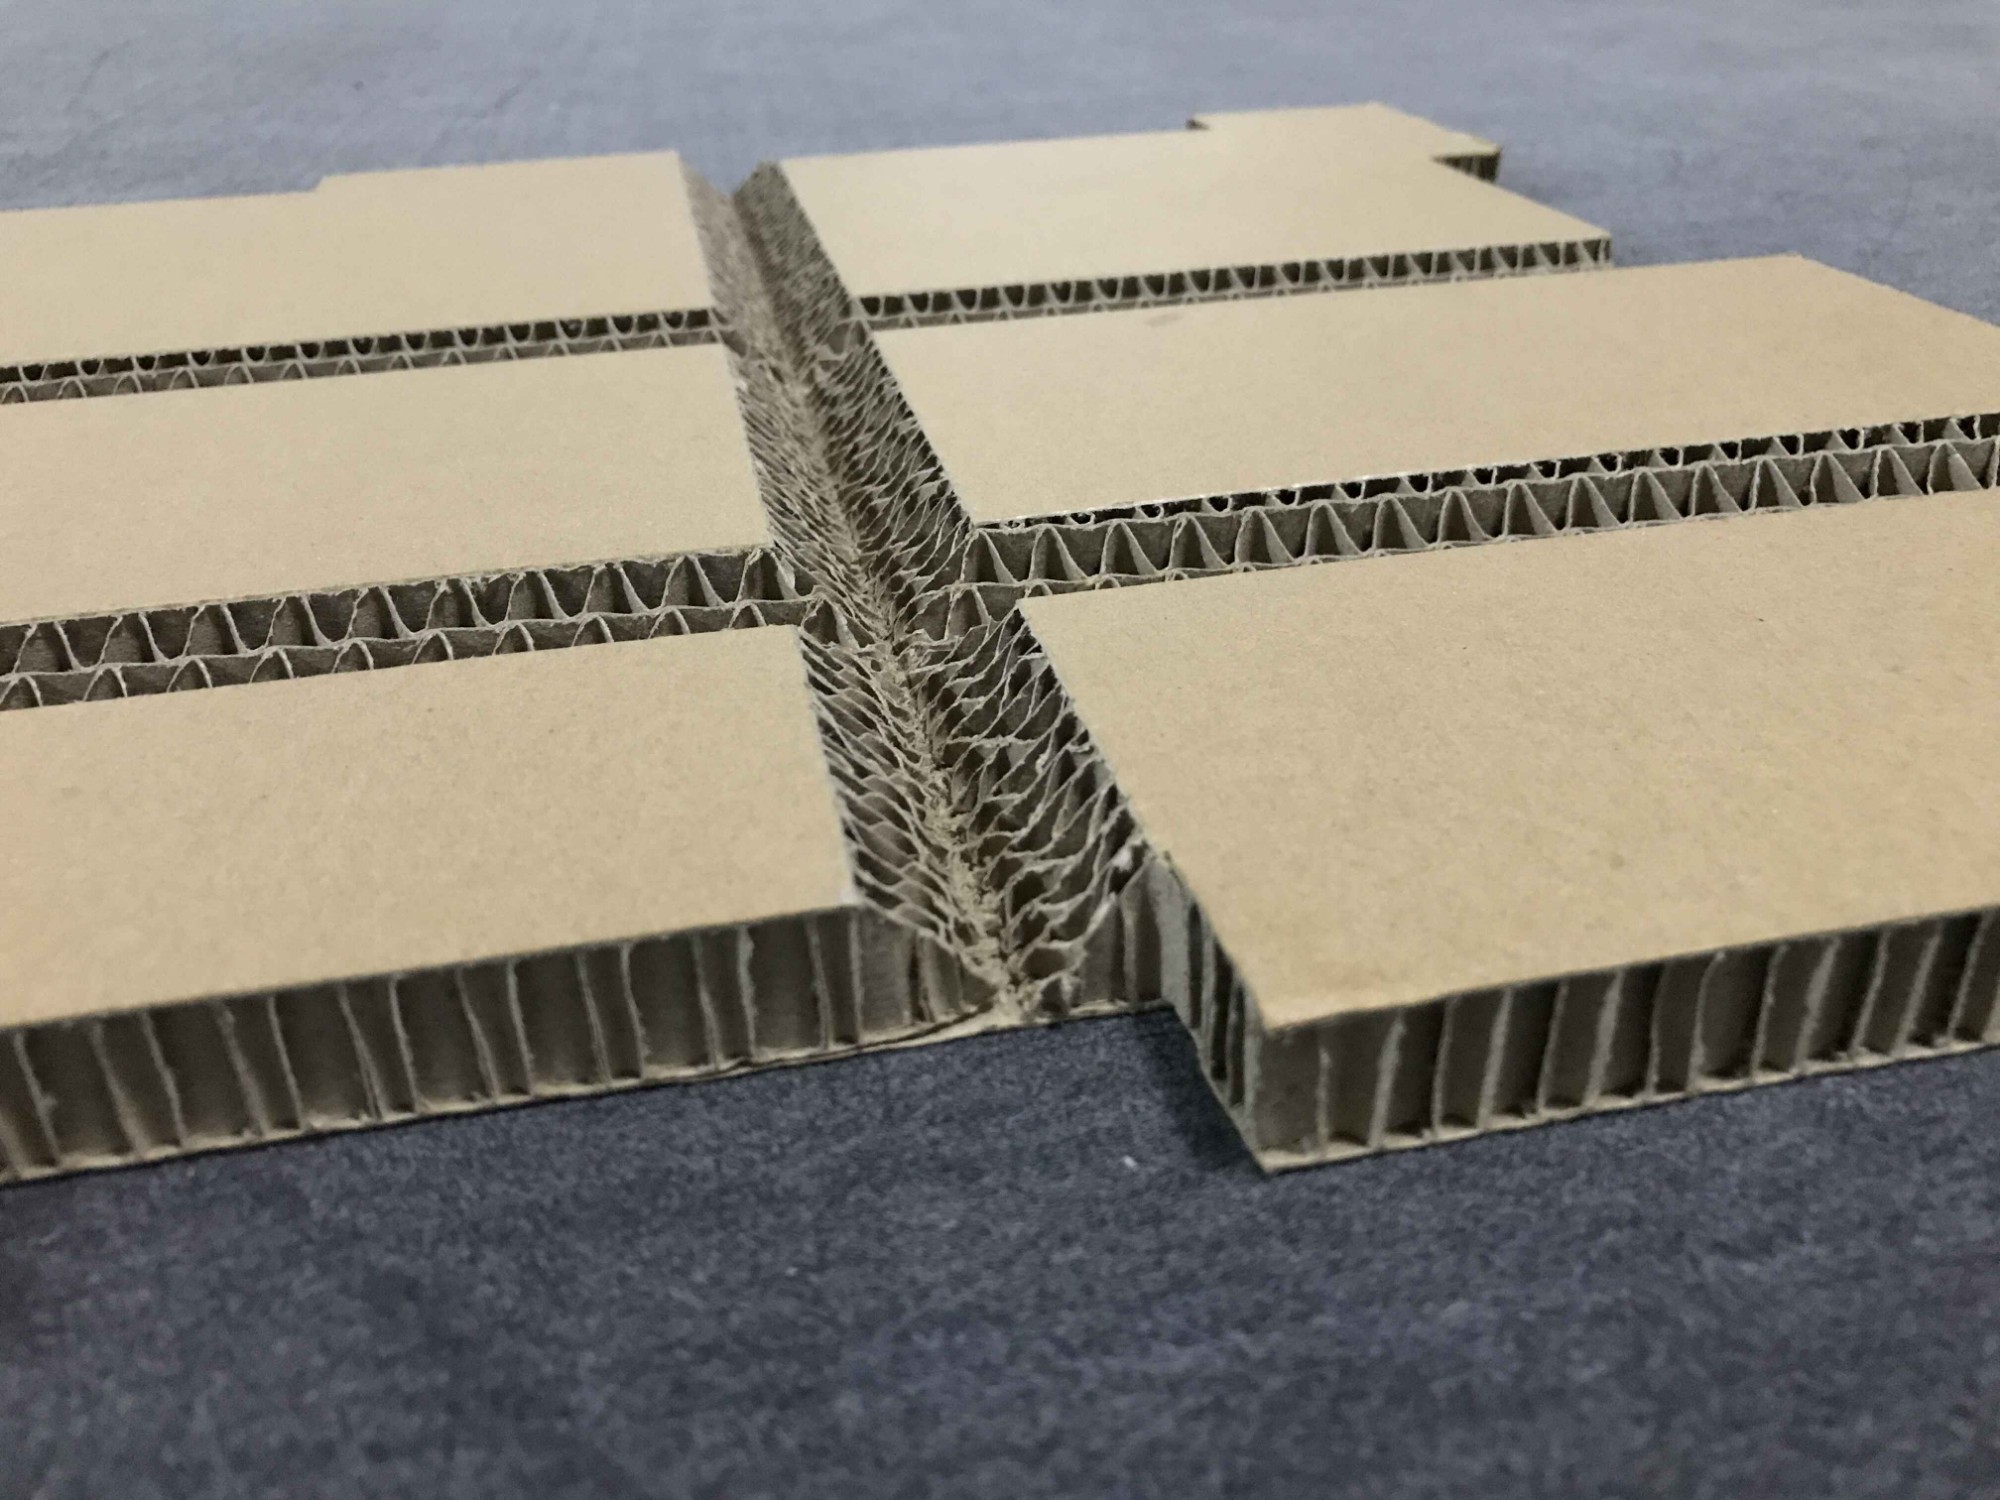 Factory Supply Corrugated Paperboard Cardboard Carton Cutting Machine Box  Cutter - China Flatbed CNC Digital & Automatic Cutting Machine, Fabric Cutting  Machine